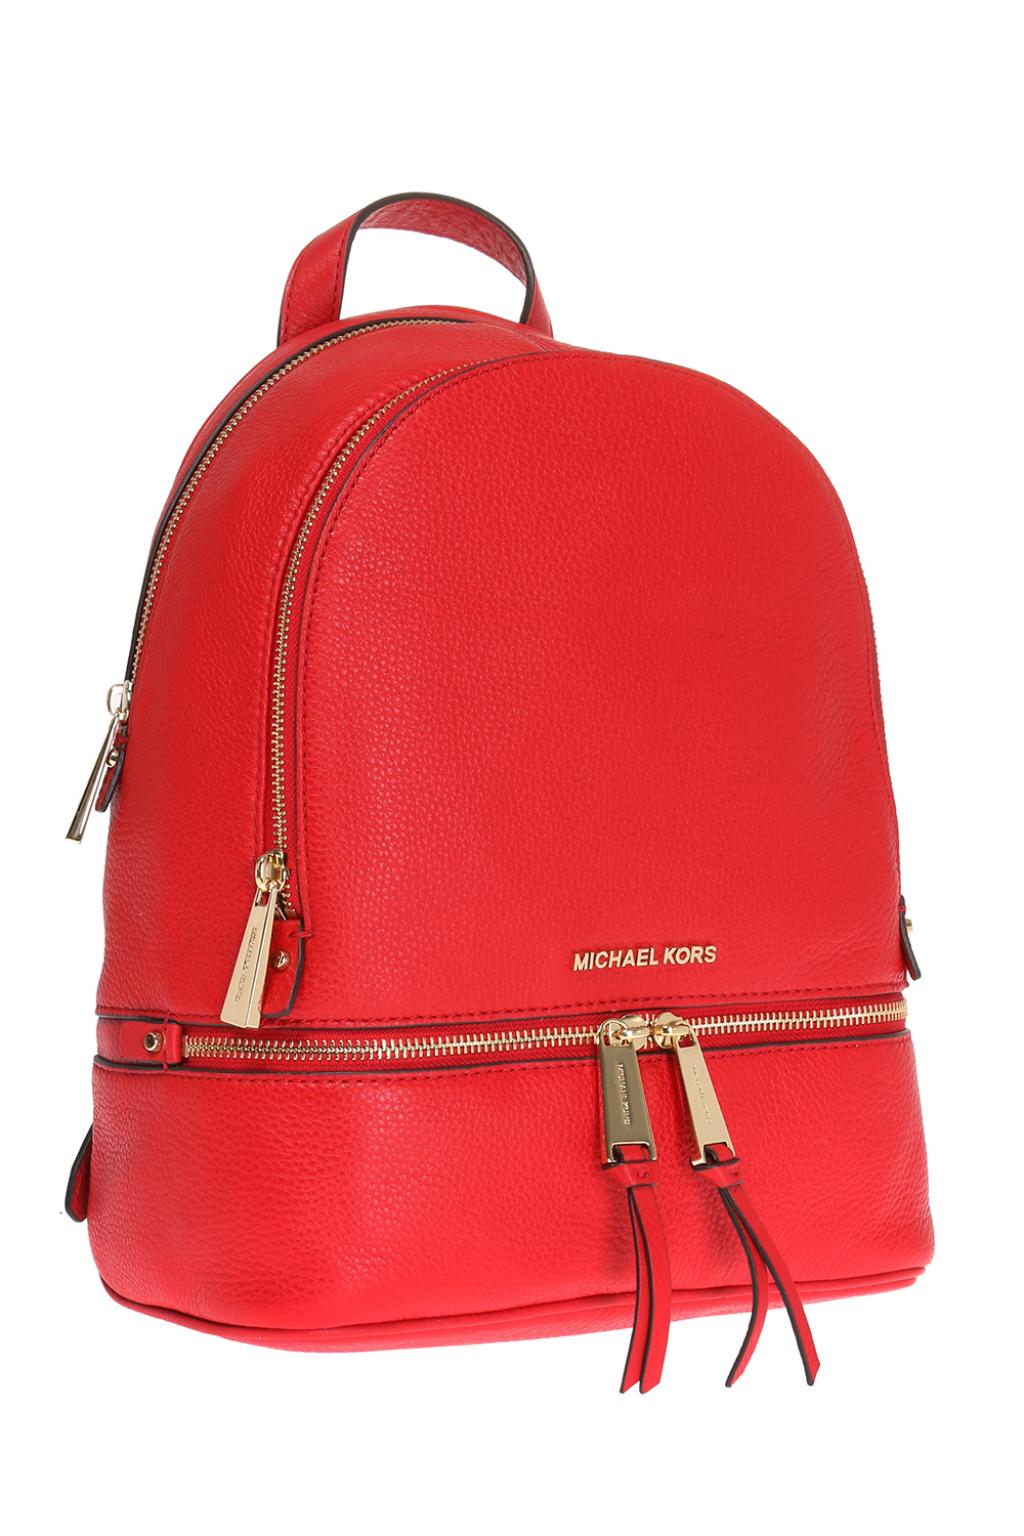 Michael Kors Women's Red Backpacks